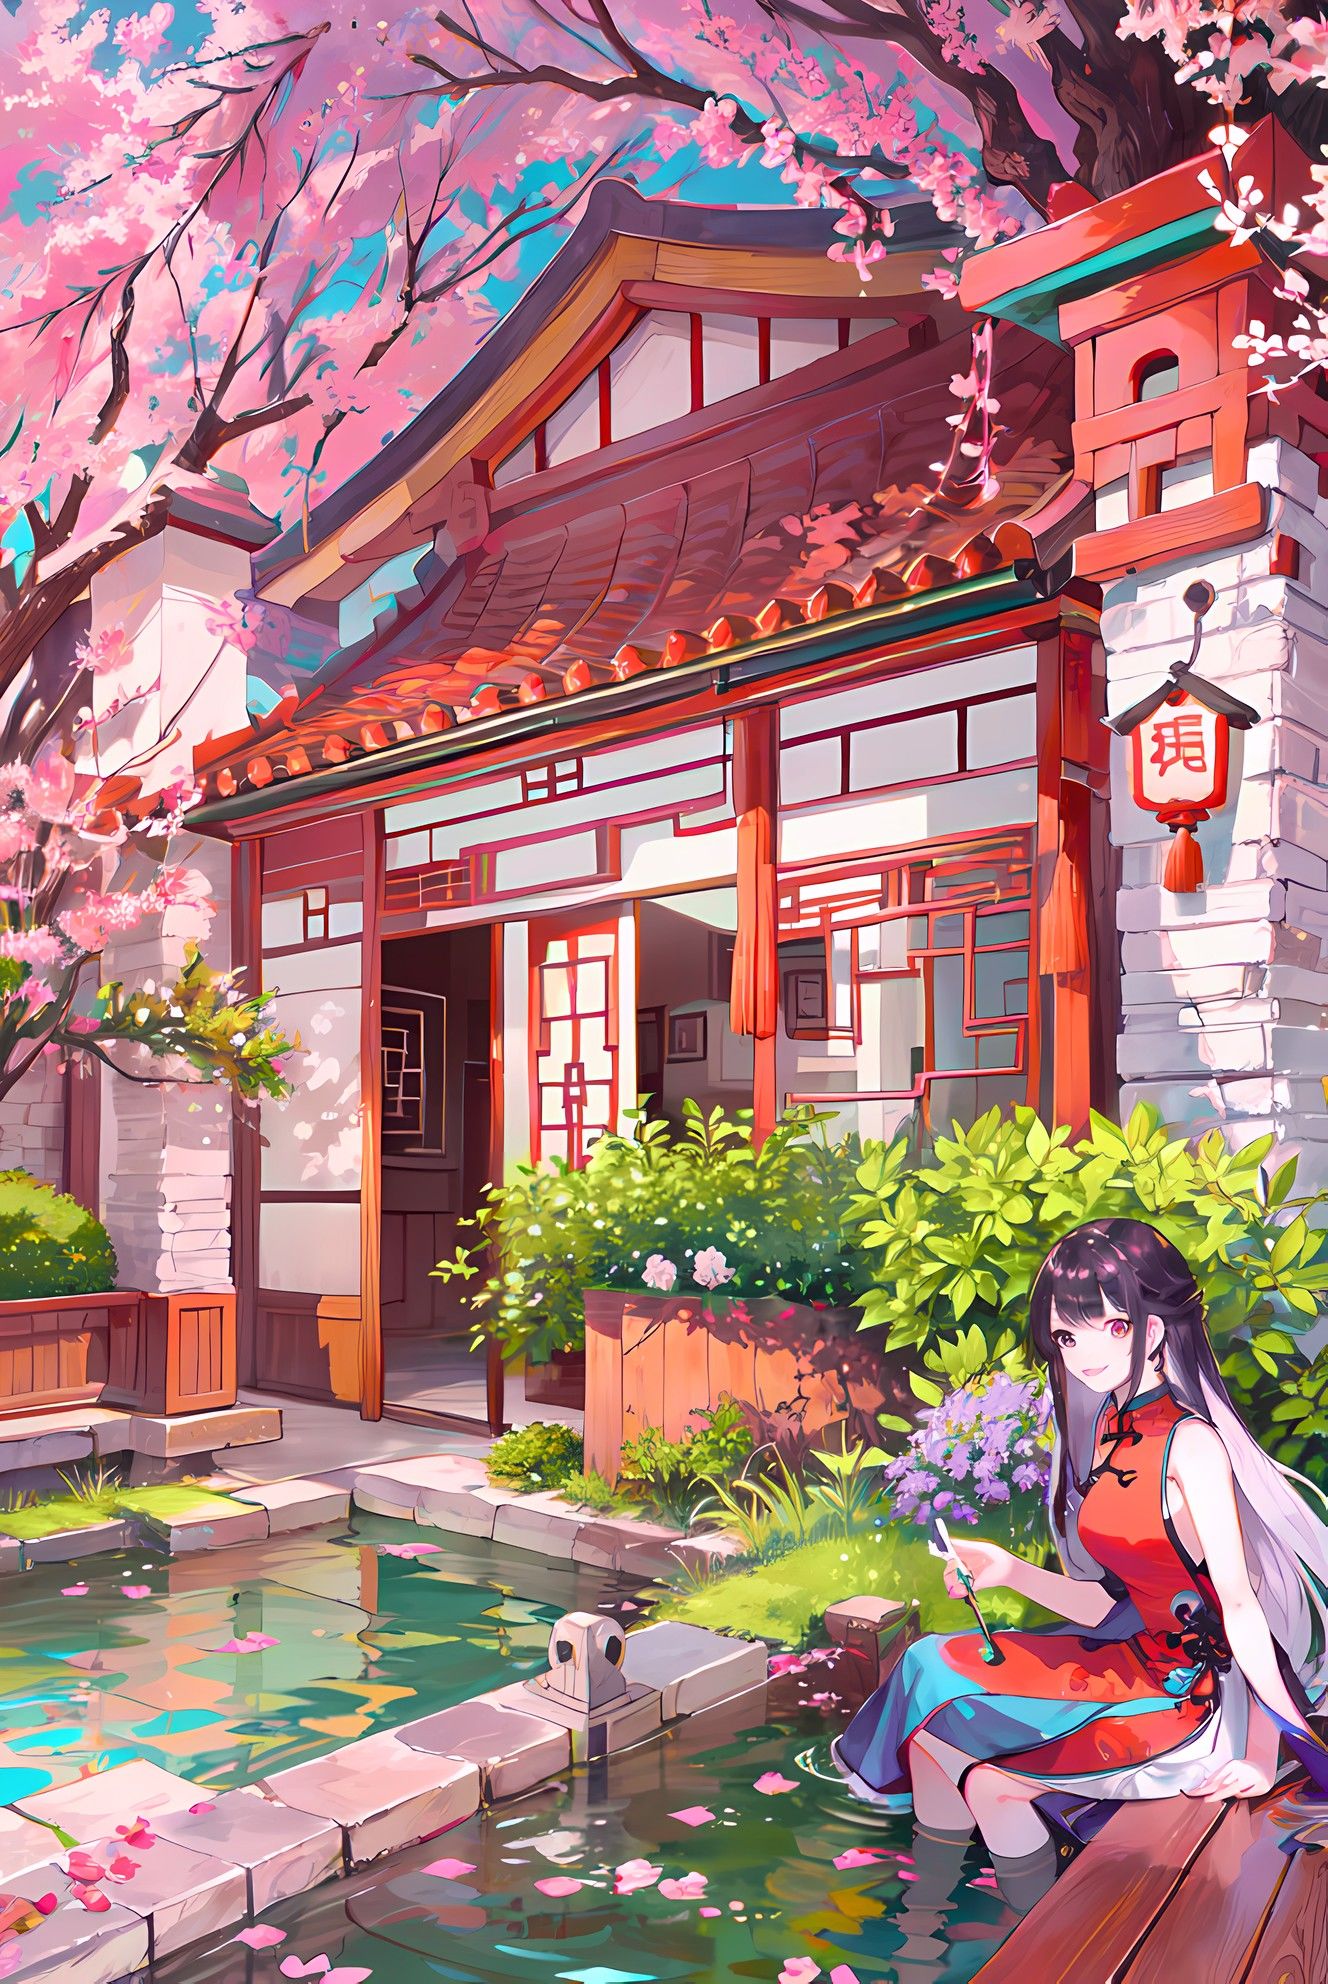 樱花树下，长发少女独坐，花瓣飘飘，古风日式庭院。插画图片壁纸